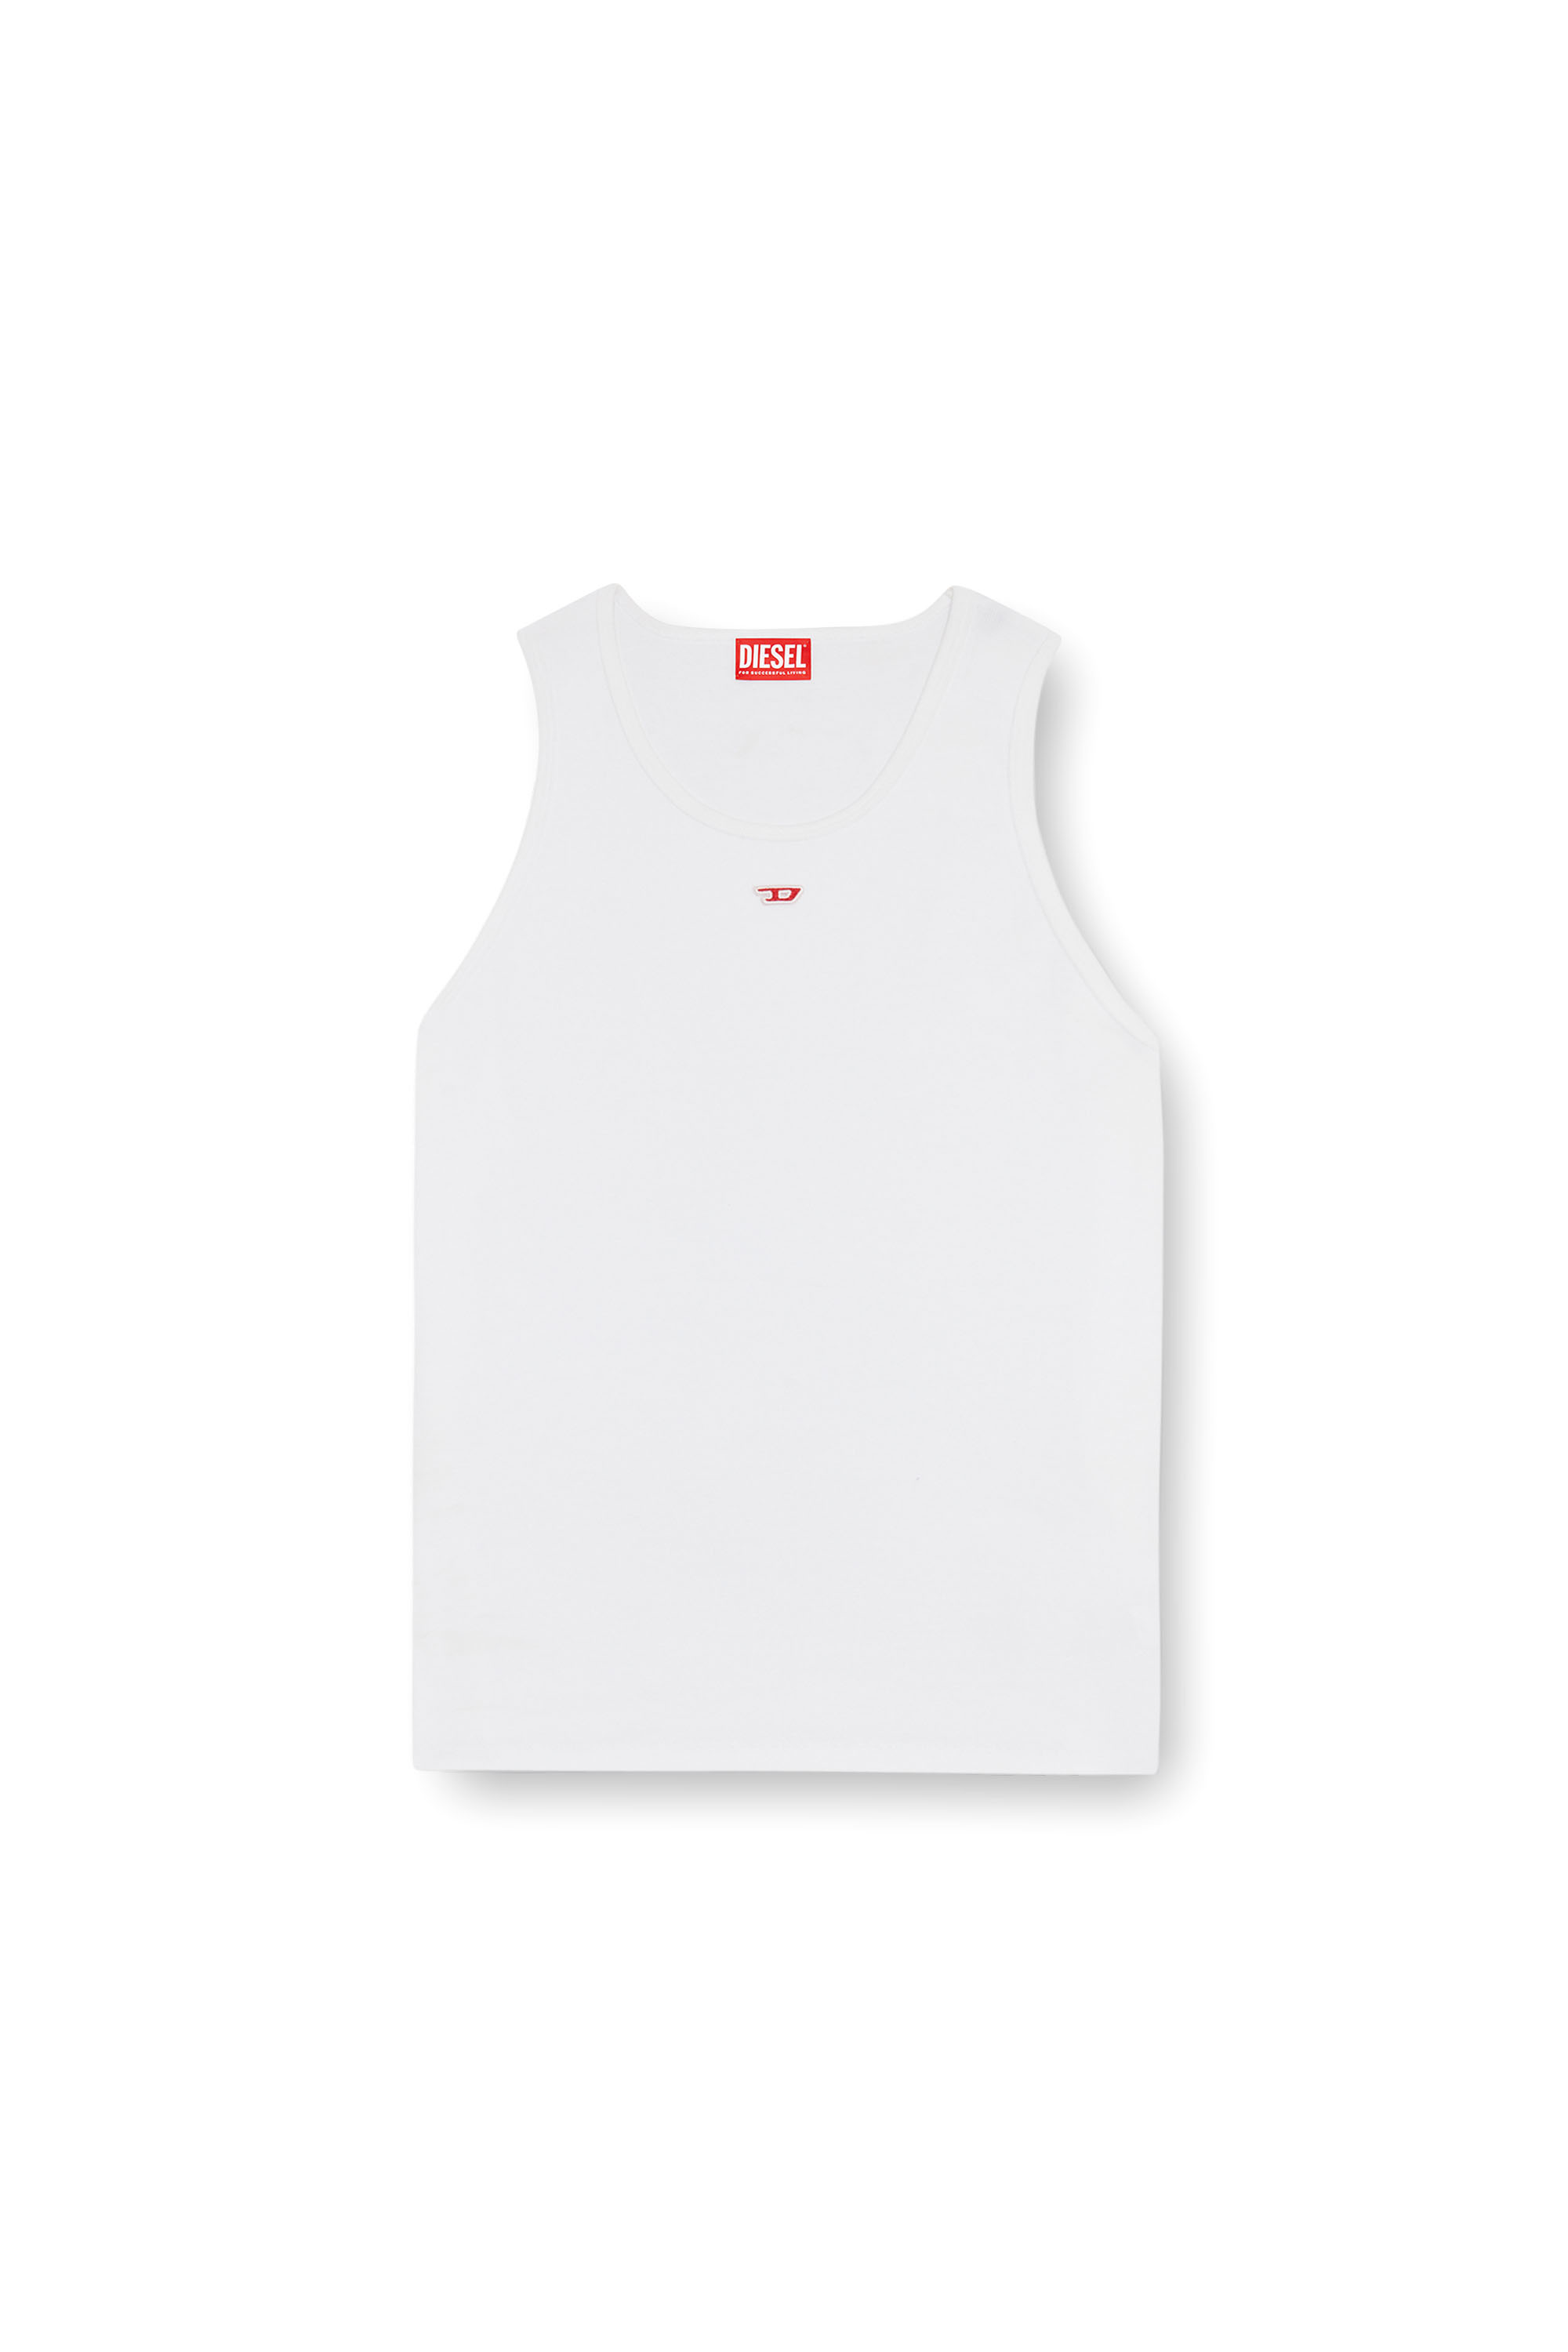 Diesel - T-LIFTY-D, Hombre Camiseta sin mangas con mini parche con el logotipo D in Blanco - Image 5